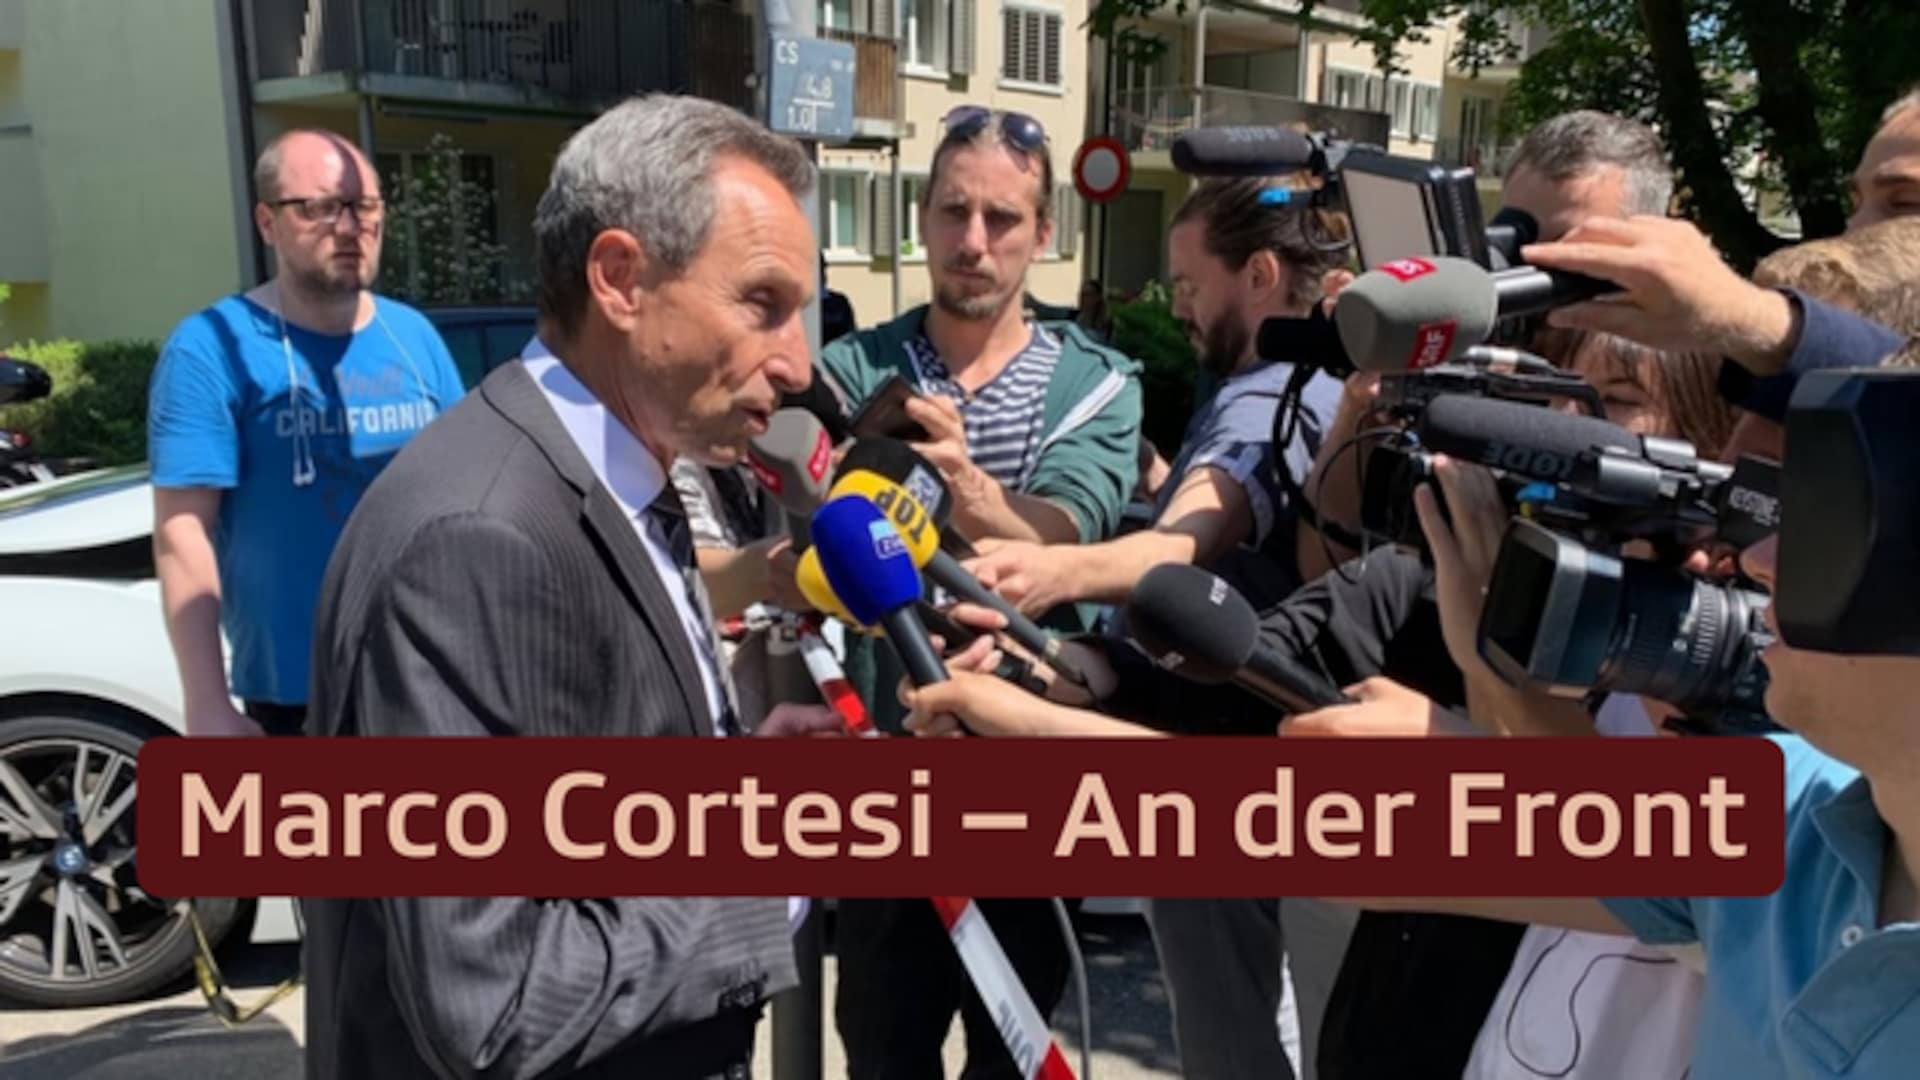 Marco Cortesi – An der Front